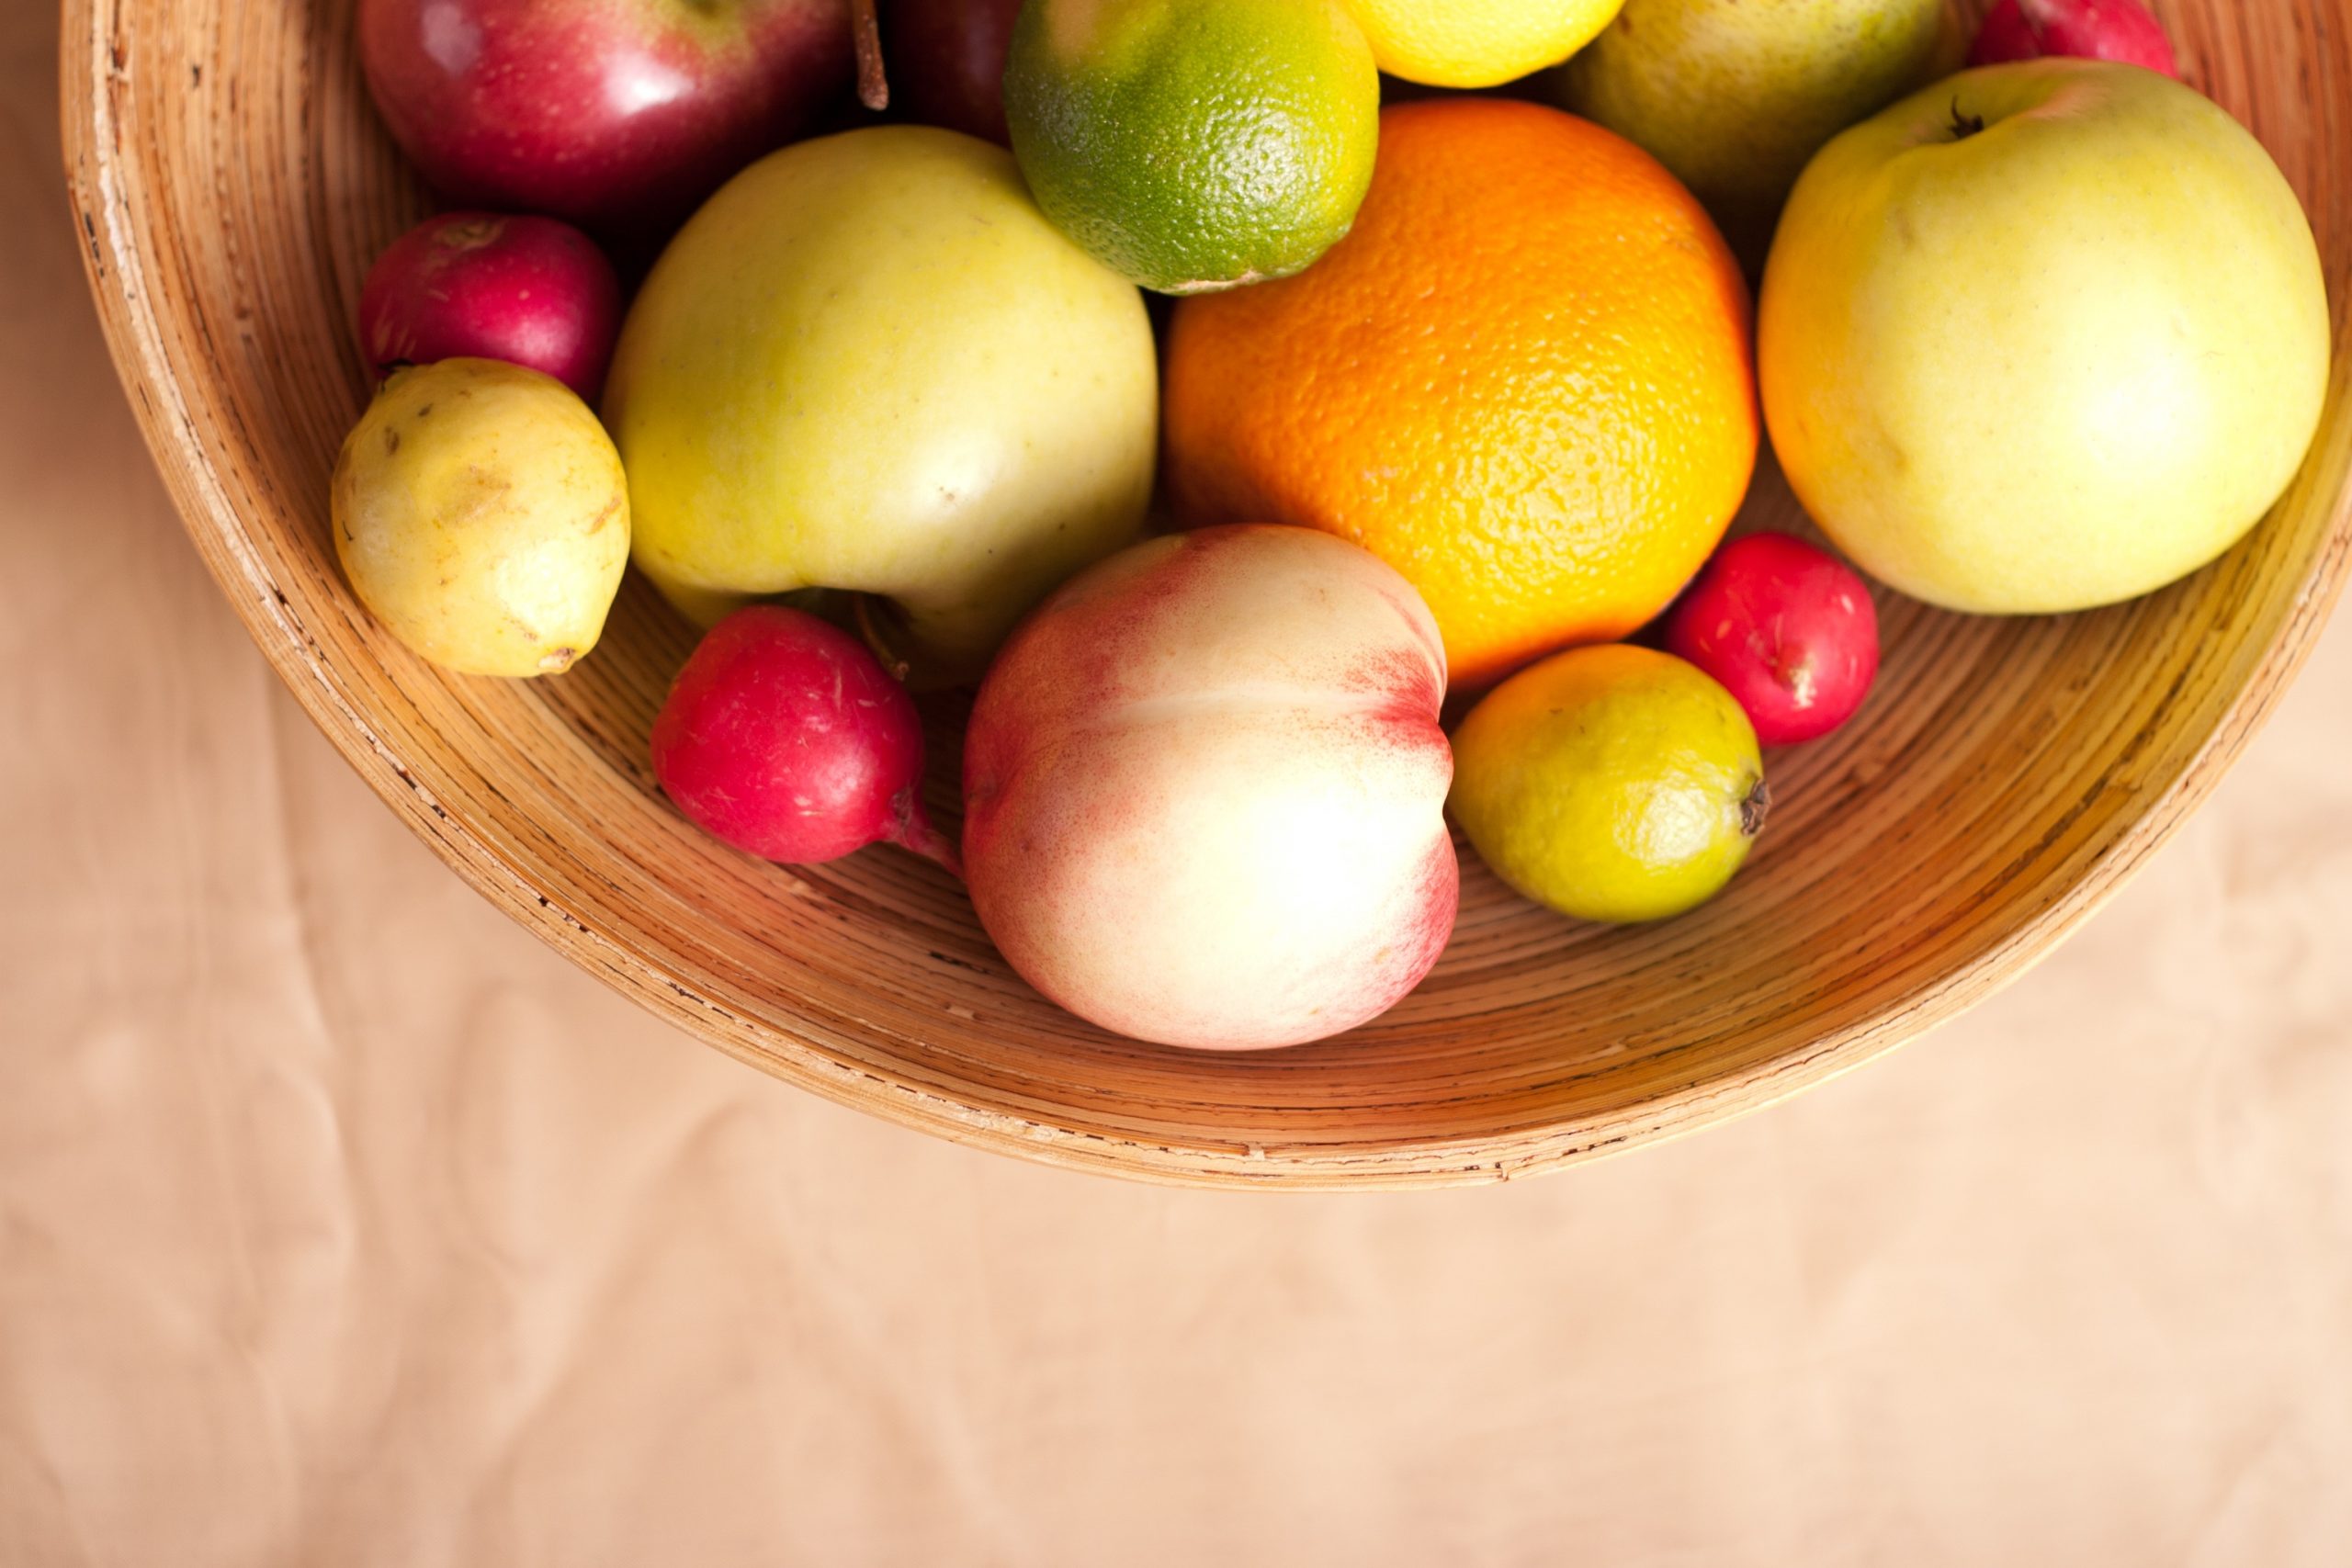 apple varieties in basket